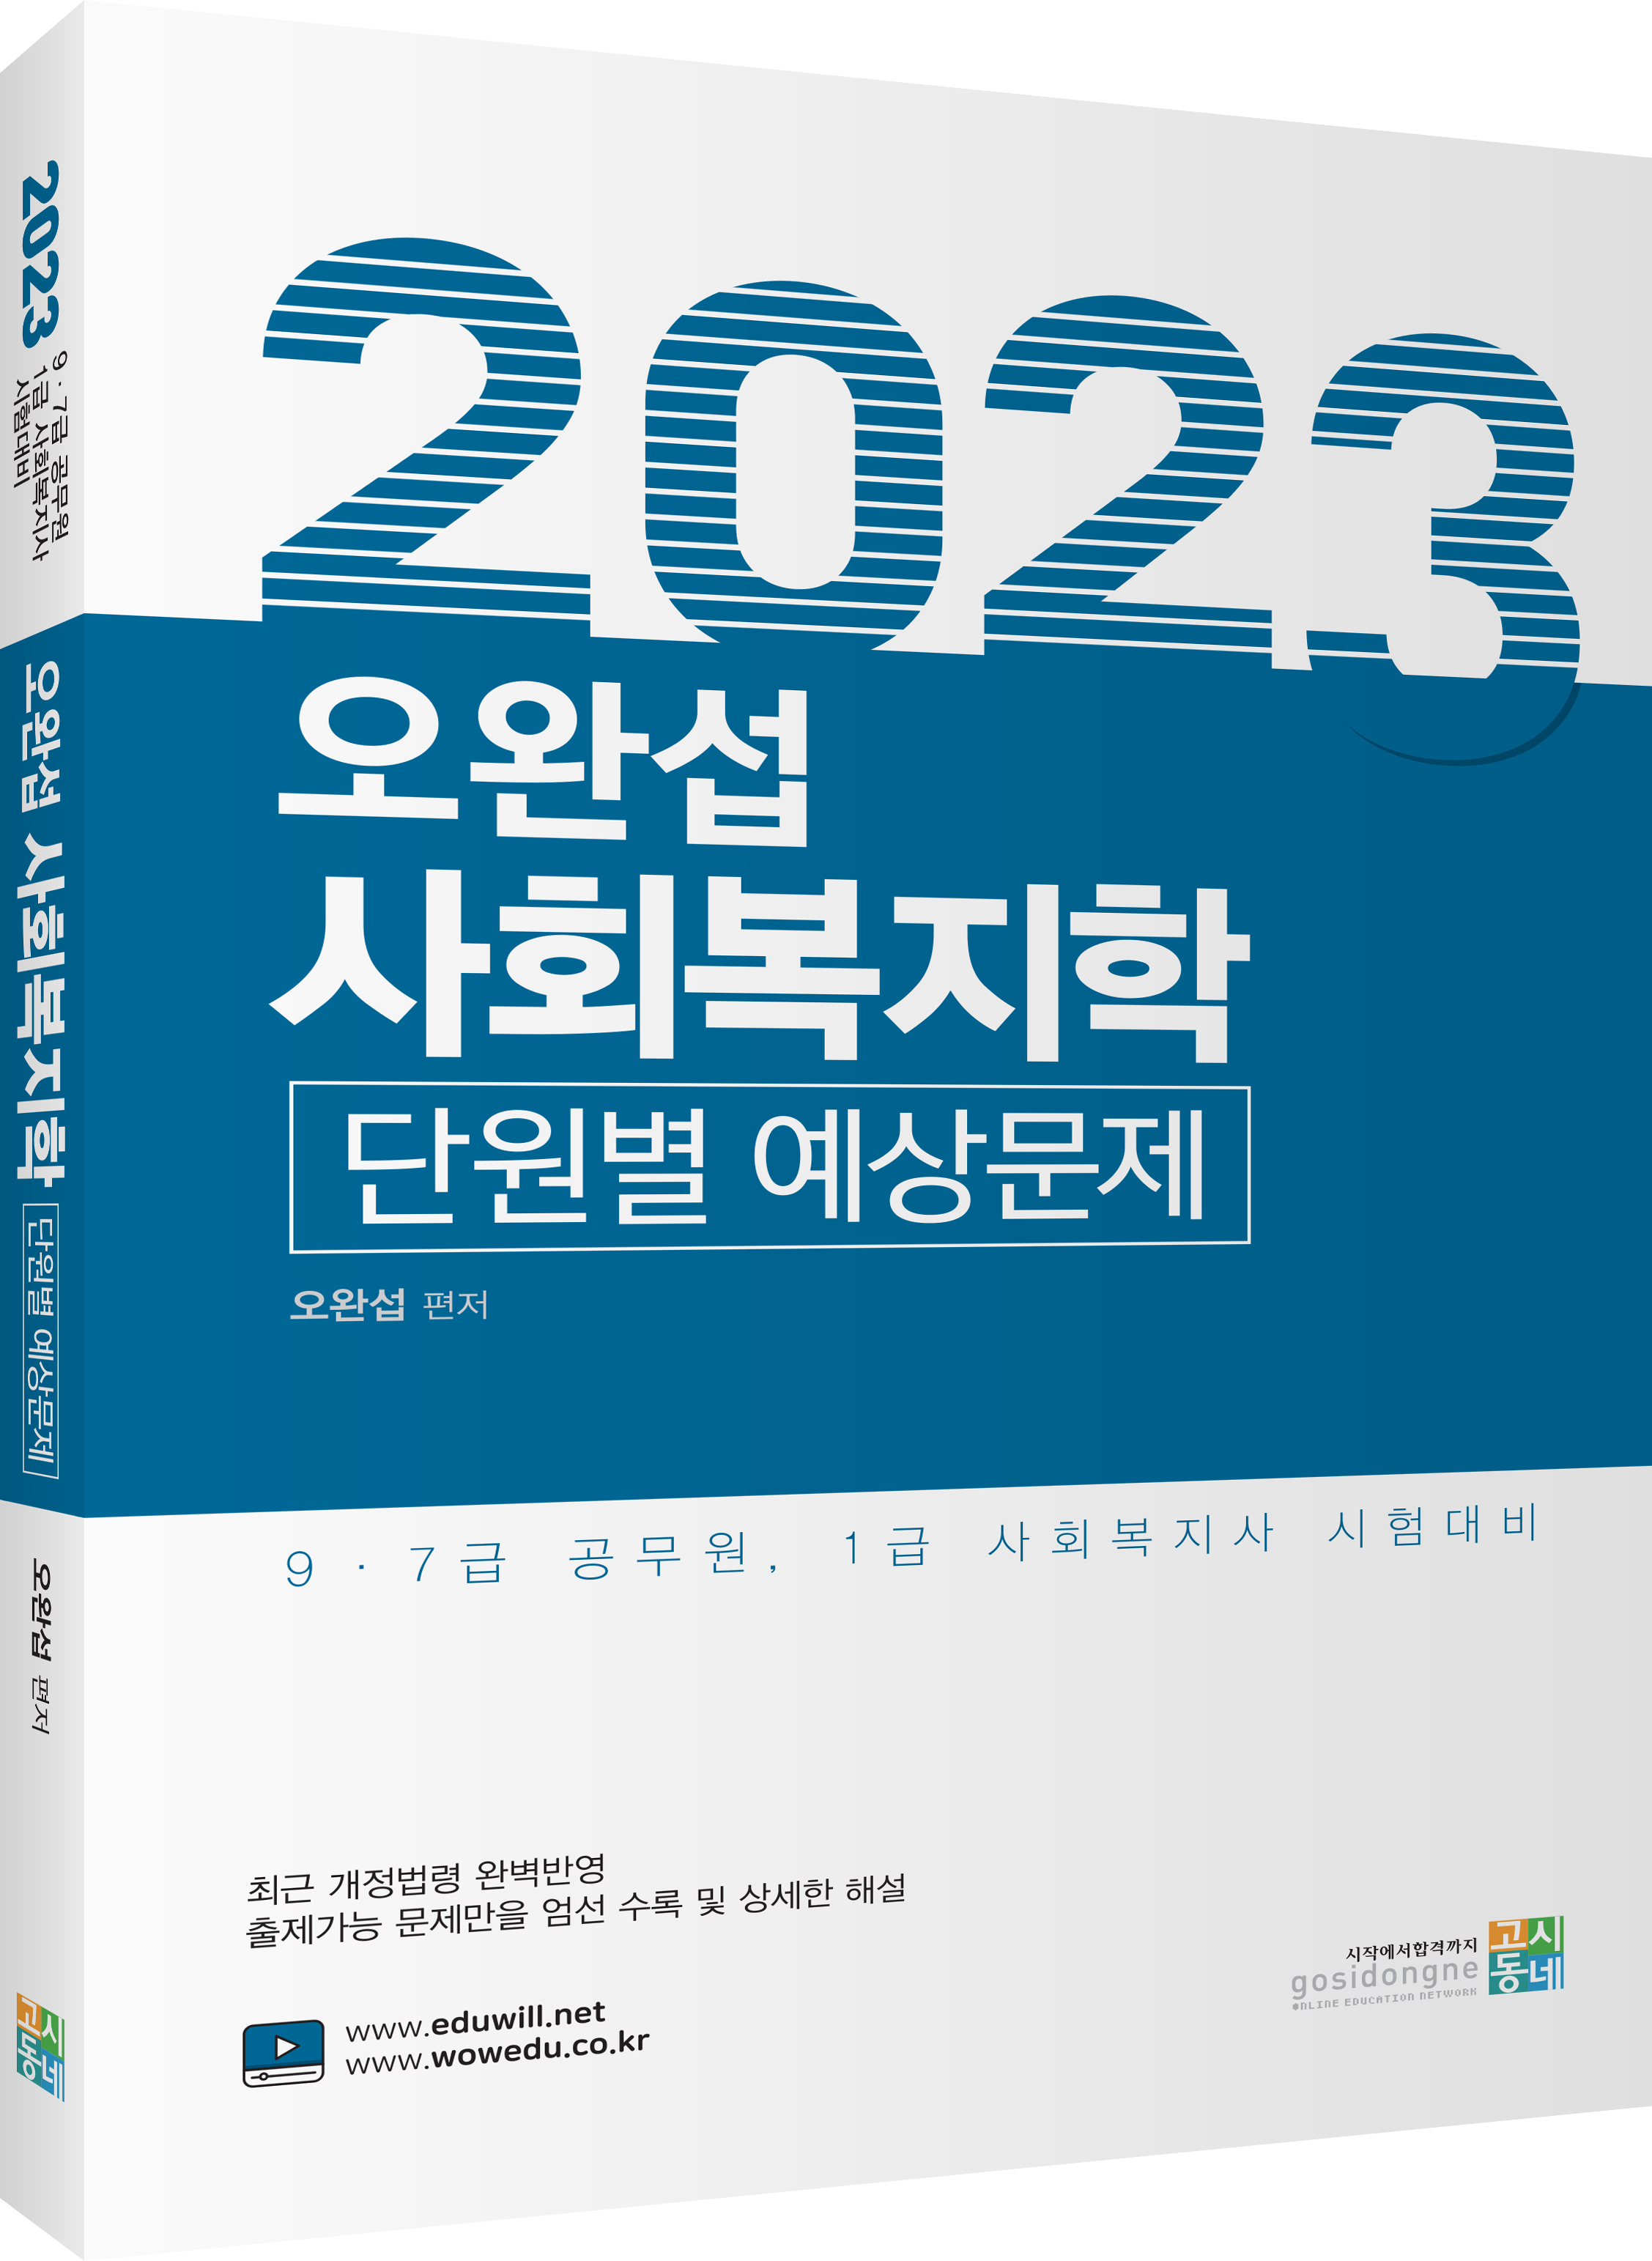 2023 오완섭 사회복지학 단원별 예상문제